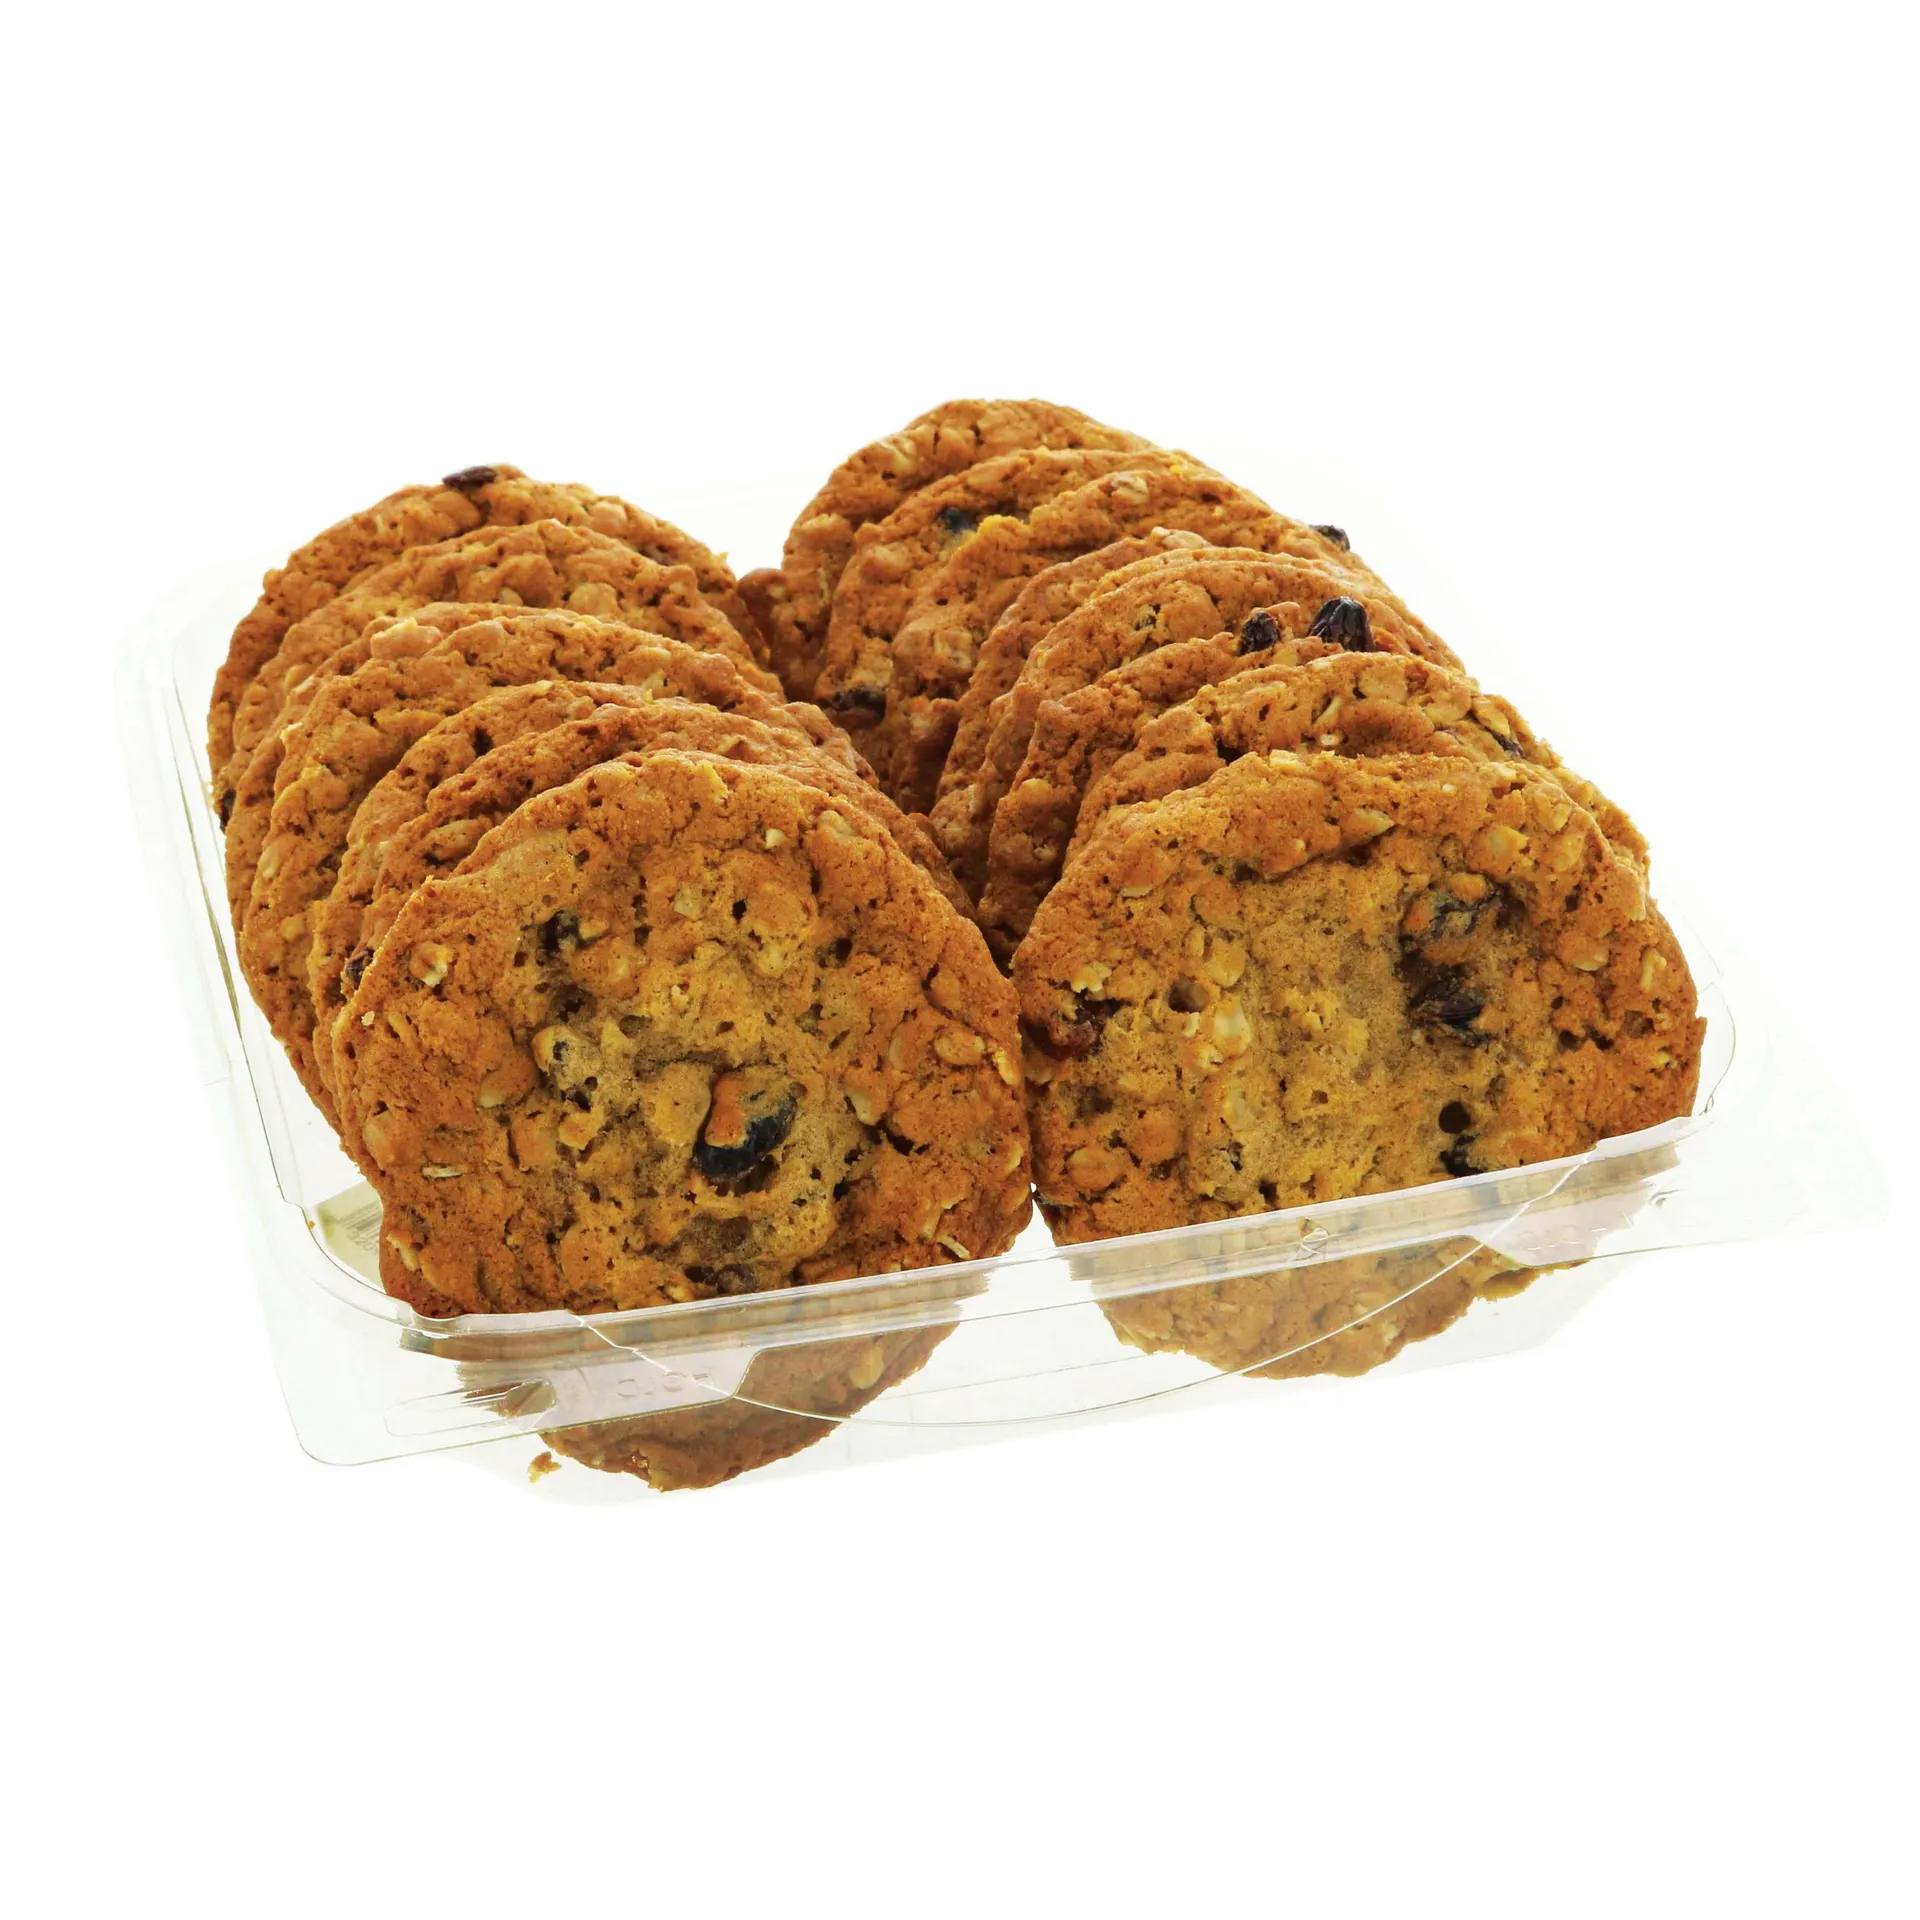 H‑E‑B Bakery Oatmeal Raisin Cookies